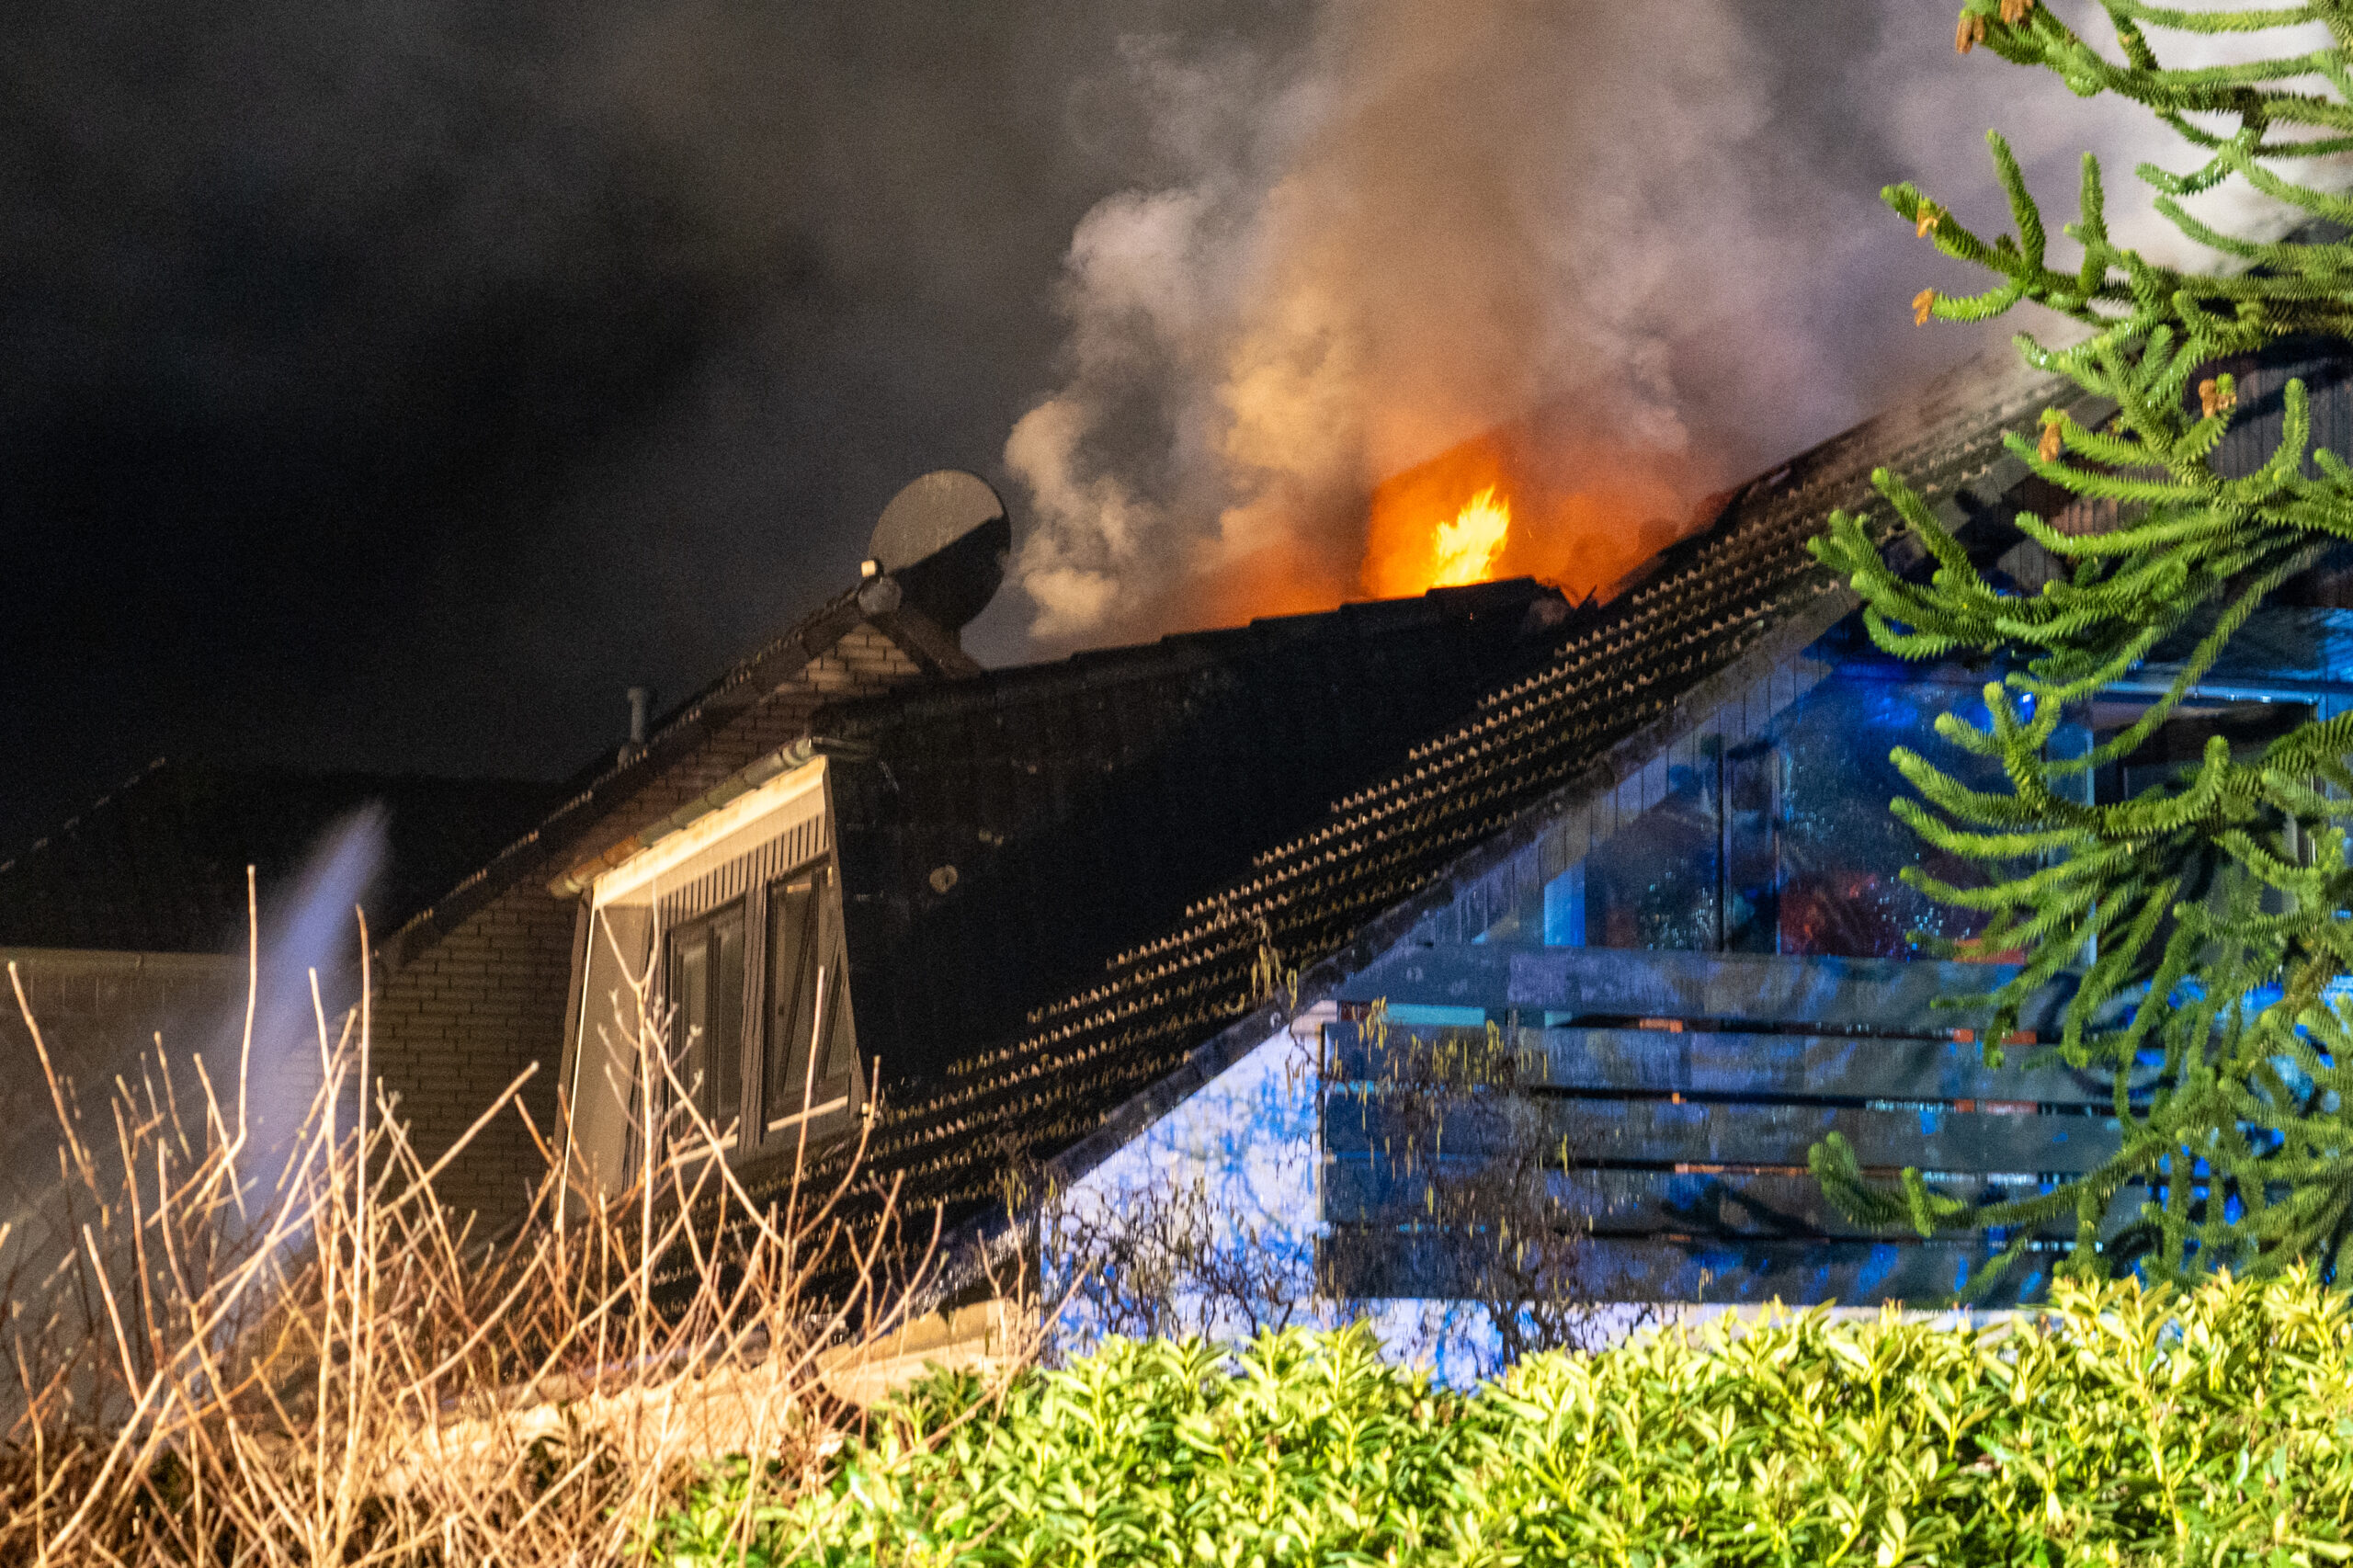 Im Landkreis Harburg: Dach von Wohnhaus in Flammen – brandstiftung vermutet